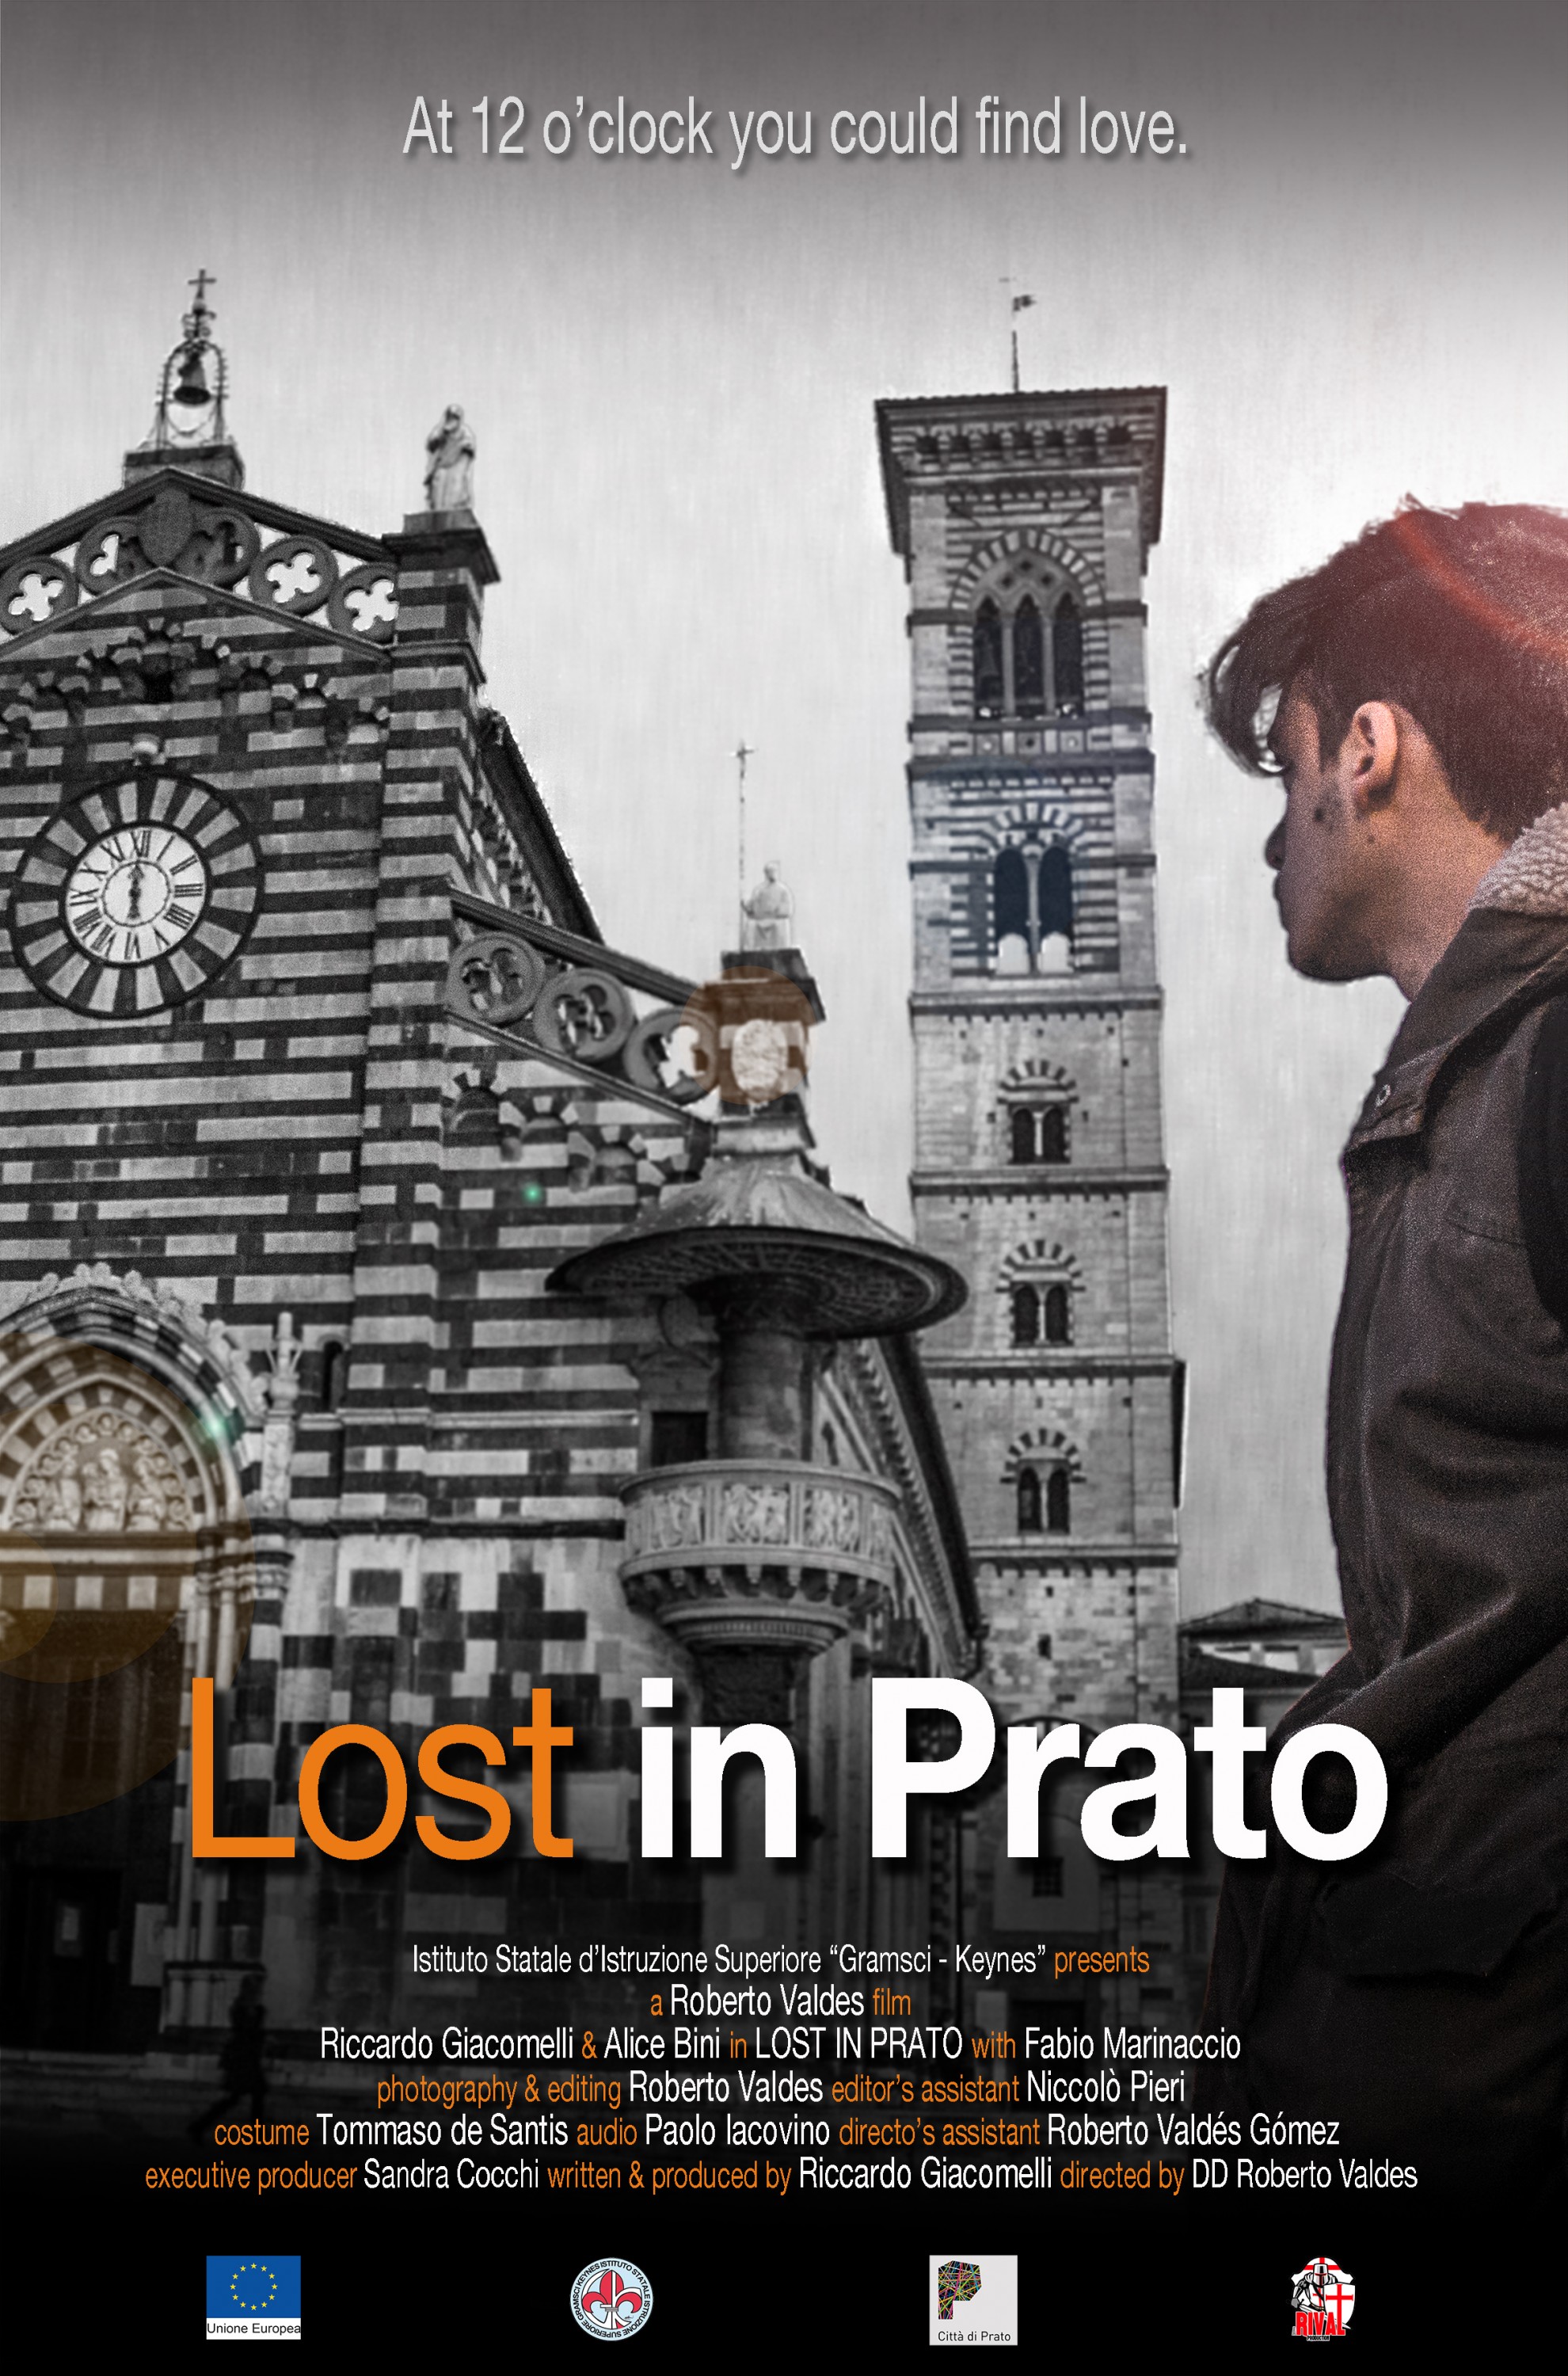 Mega Sized Movie Poster Image for Lost in Prato